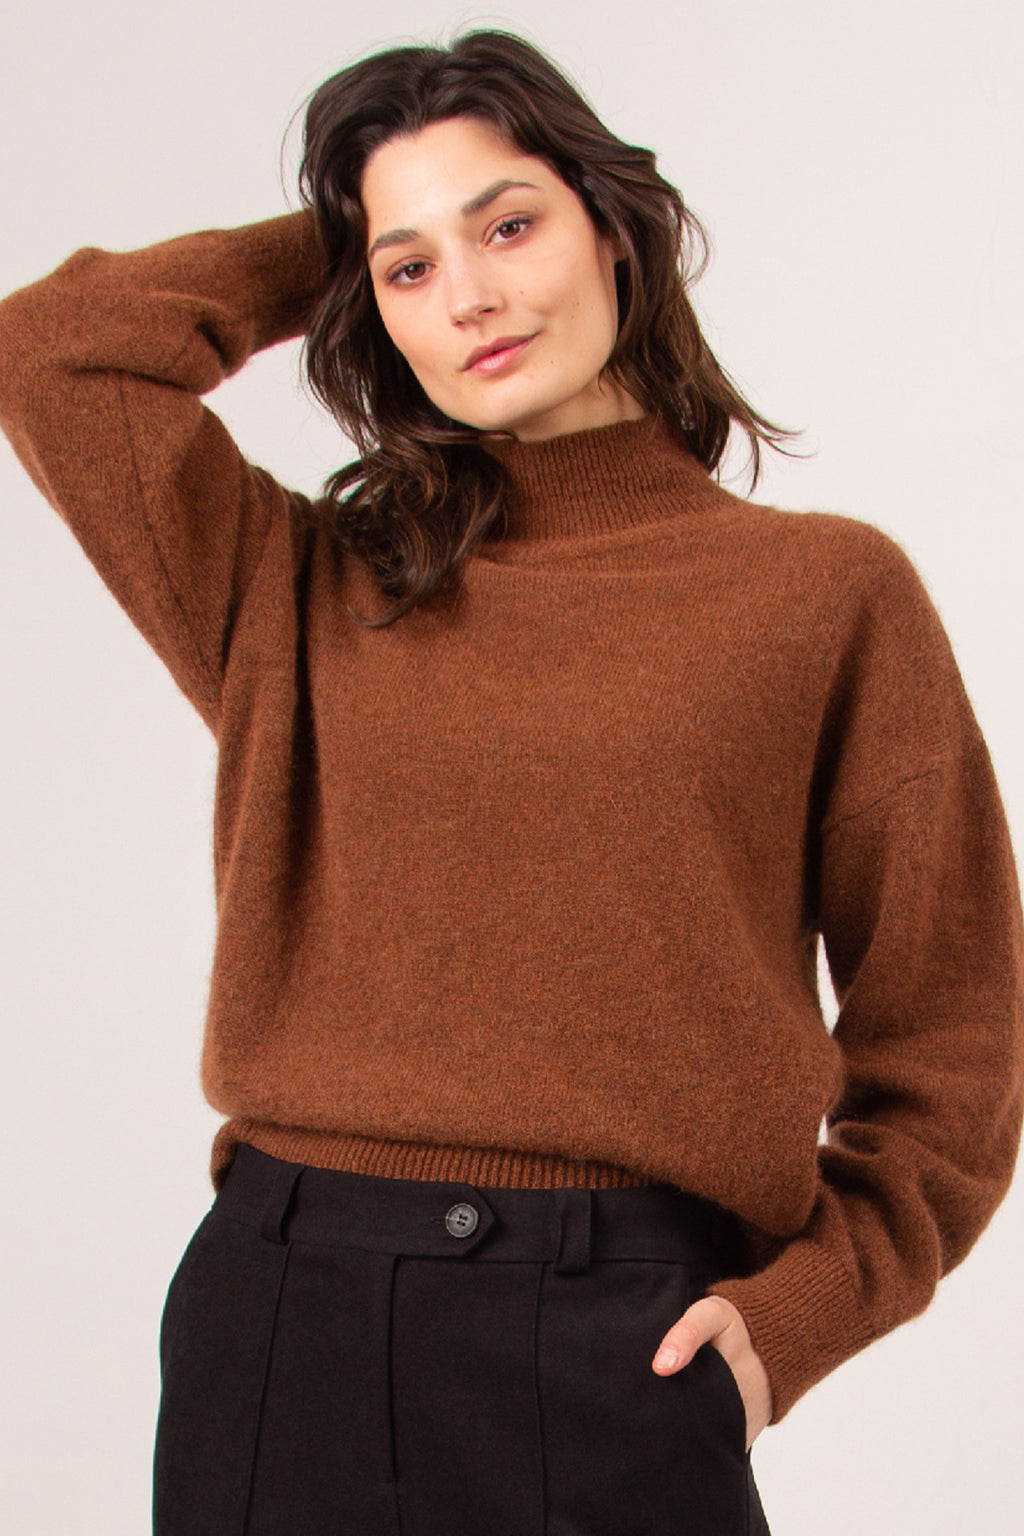 Astoria cinnamon alpaca sweater